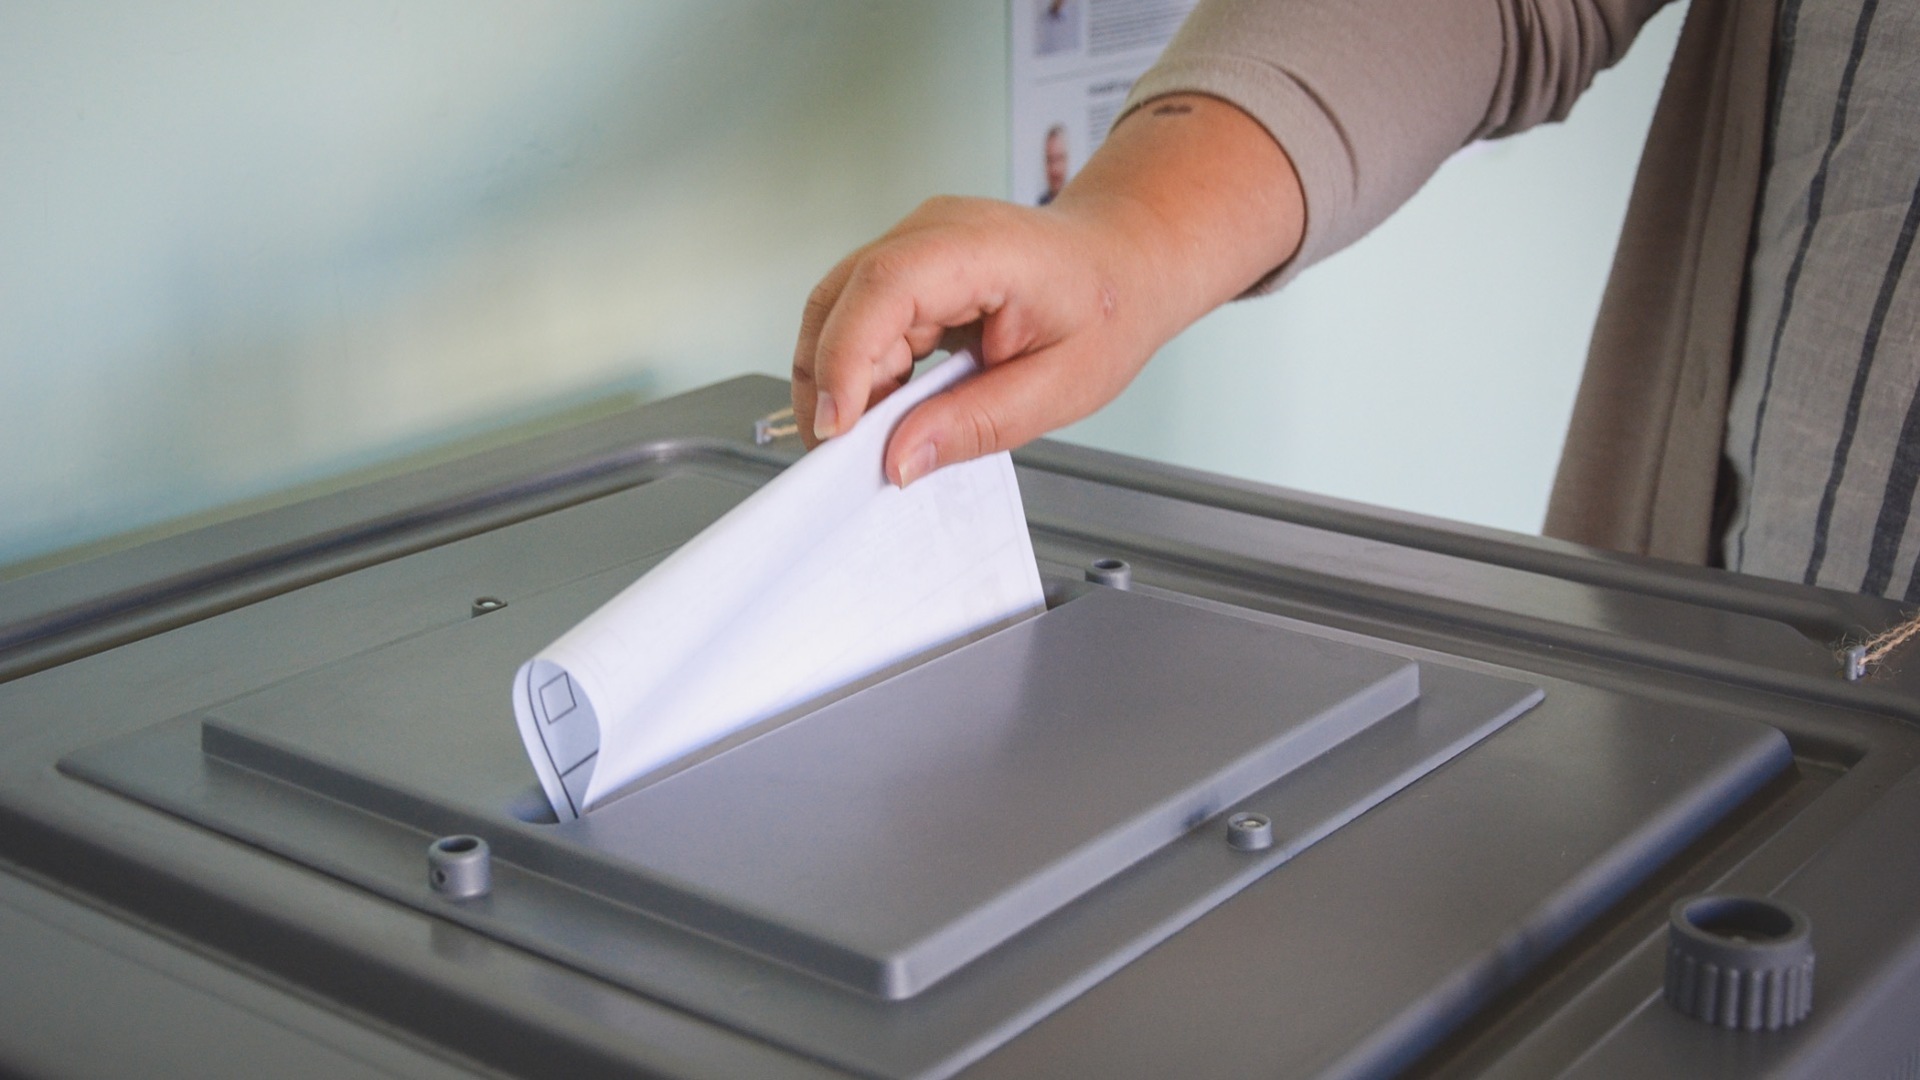 Жительнице Сосновоборска предлагали деньги за голос на выборах